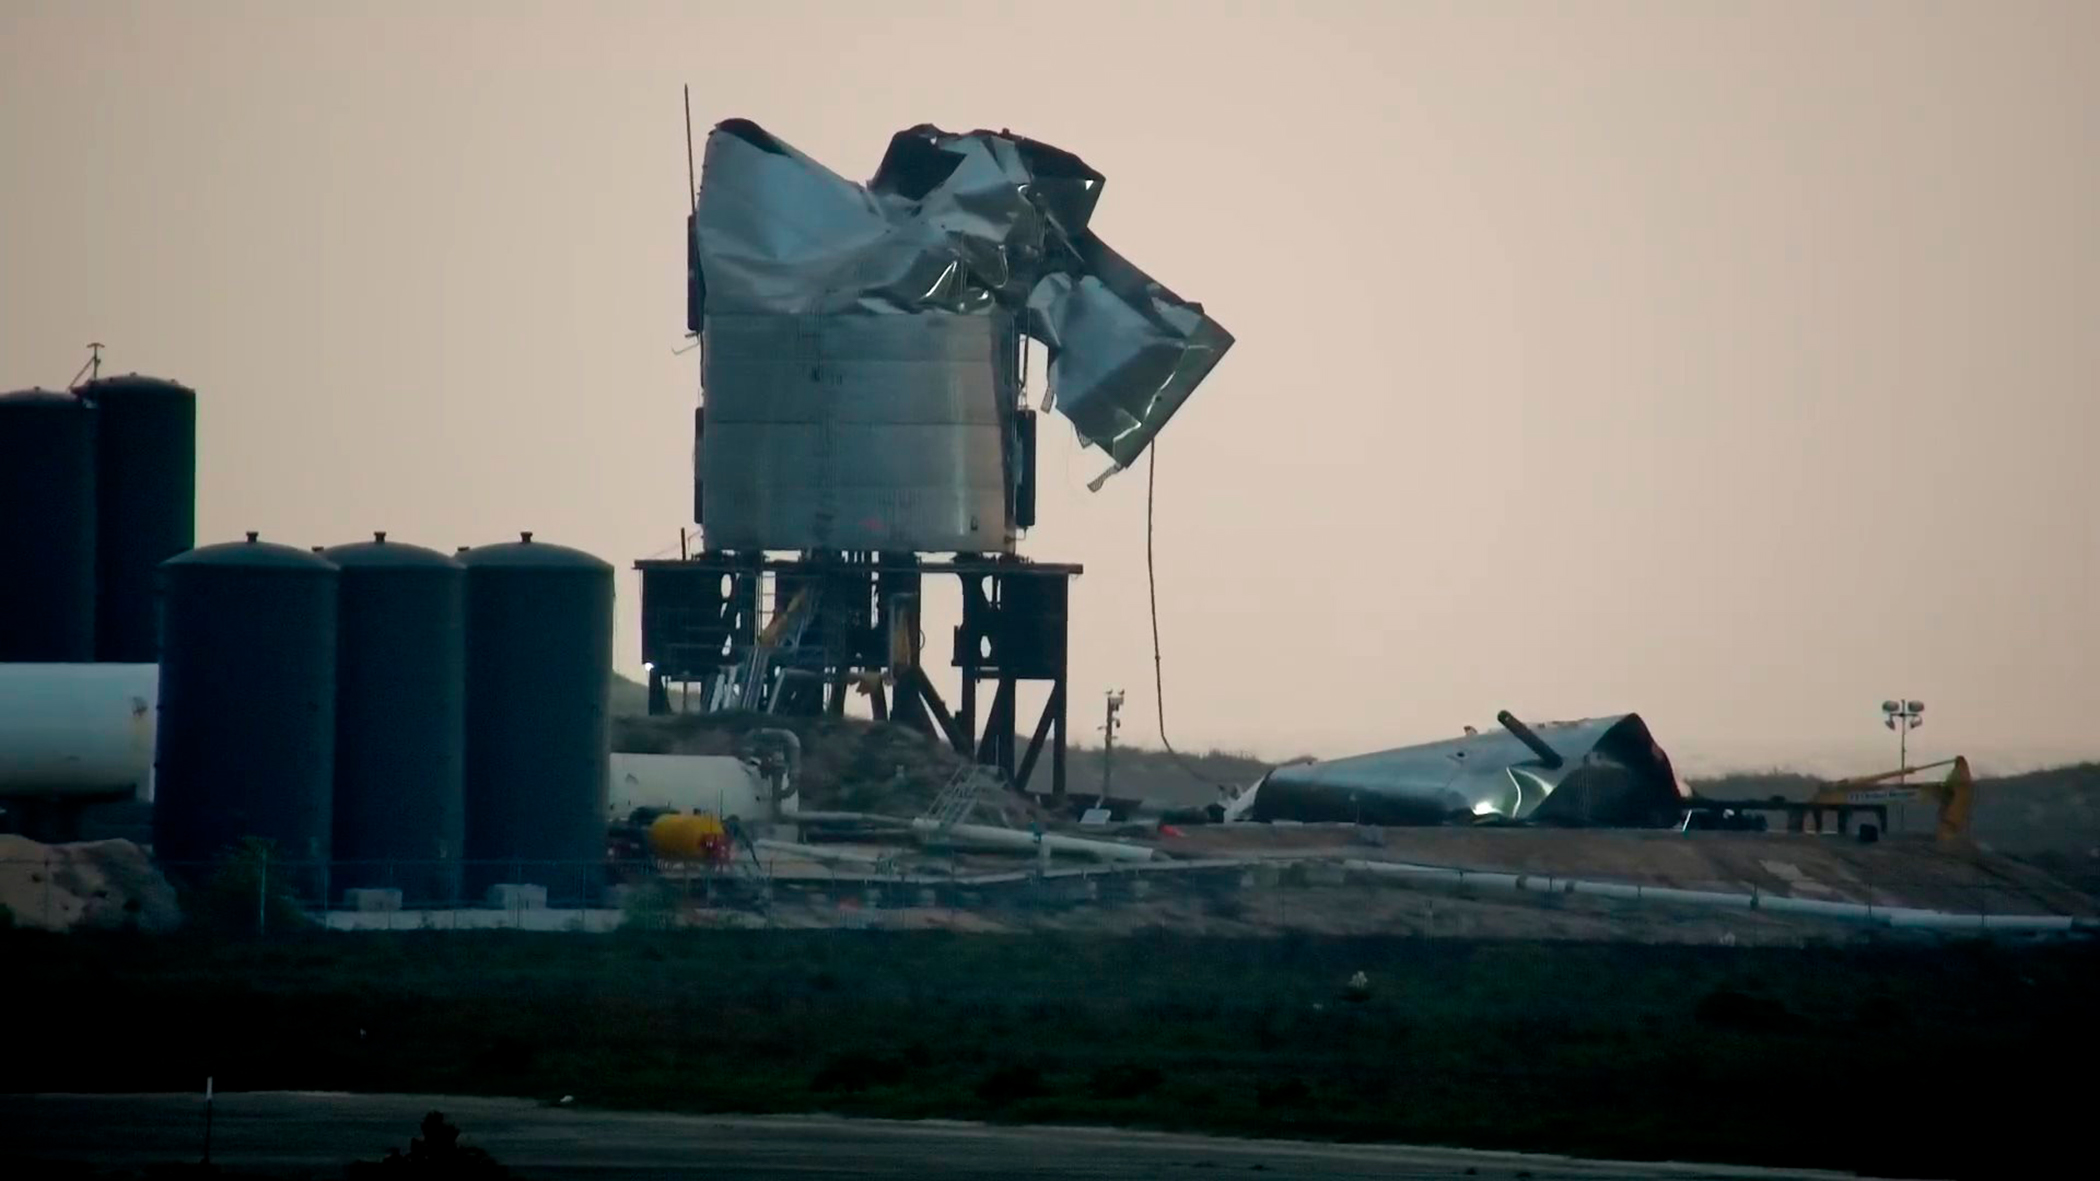 L'explosion du prototype SN3 a été suivie en direct depuis le site internet de la commune de South Padre Island qui, profitant d'une vue sur la base de SpaceX, y a installé des caméras filmant en permanence les activités de la base de Boca Chica. © South Padre Island 